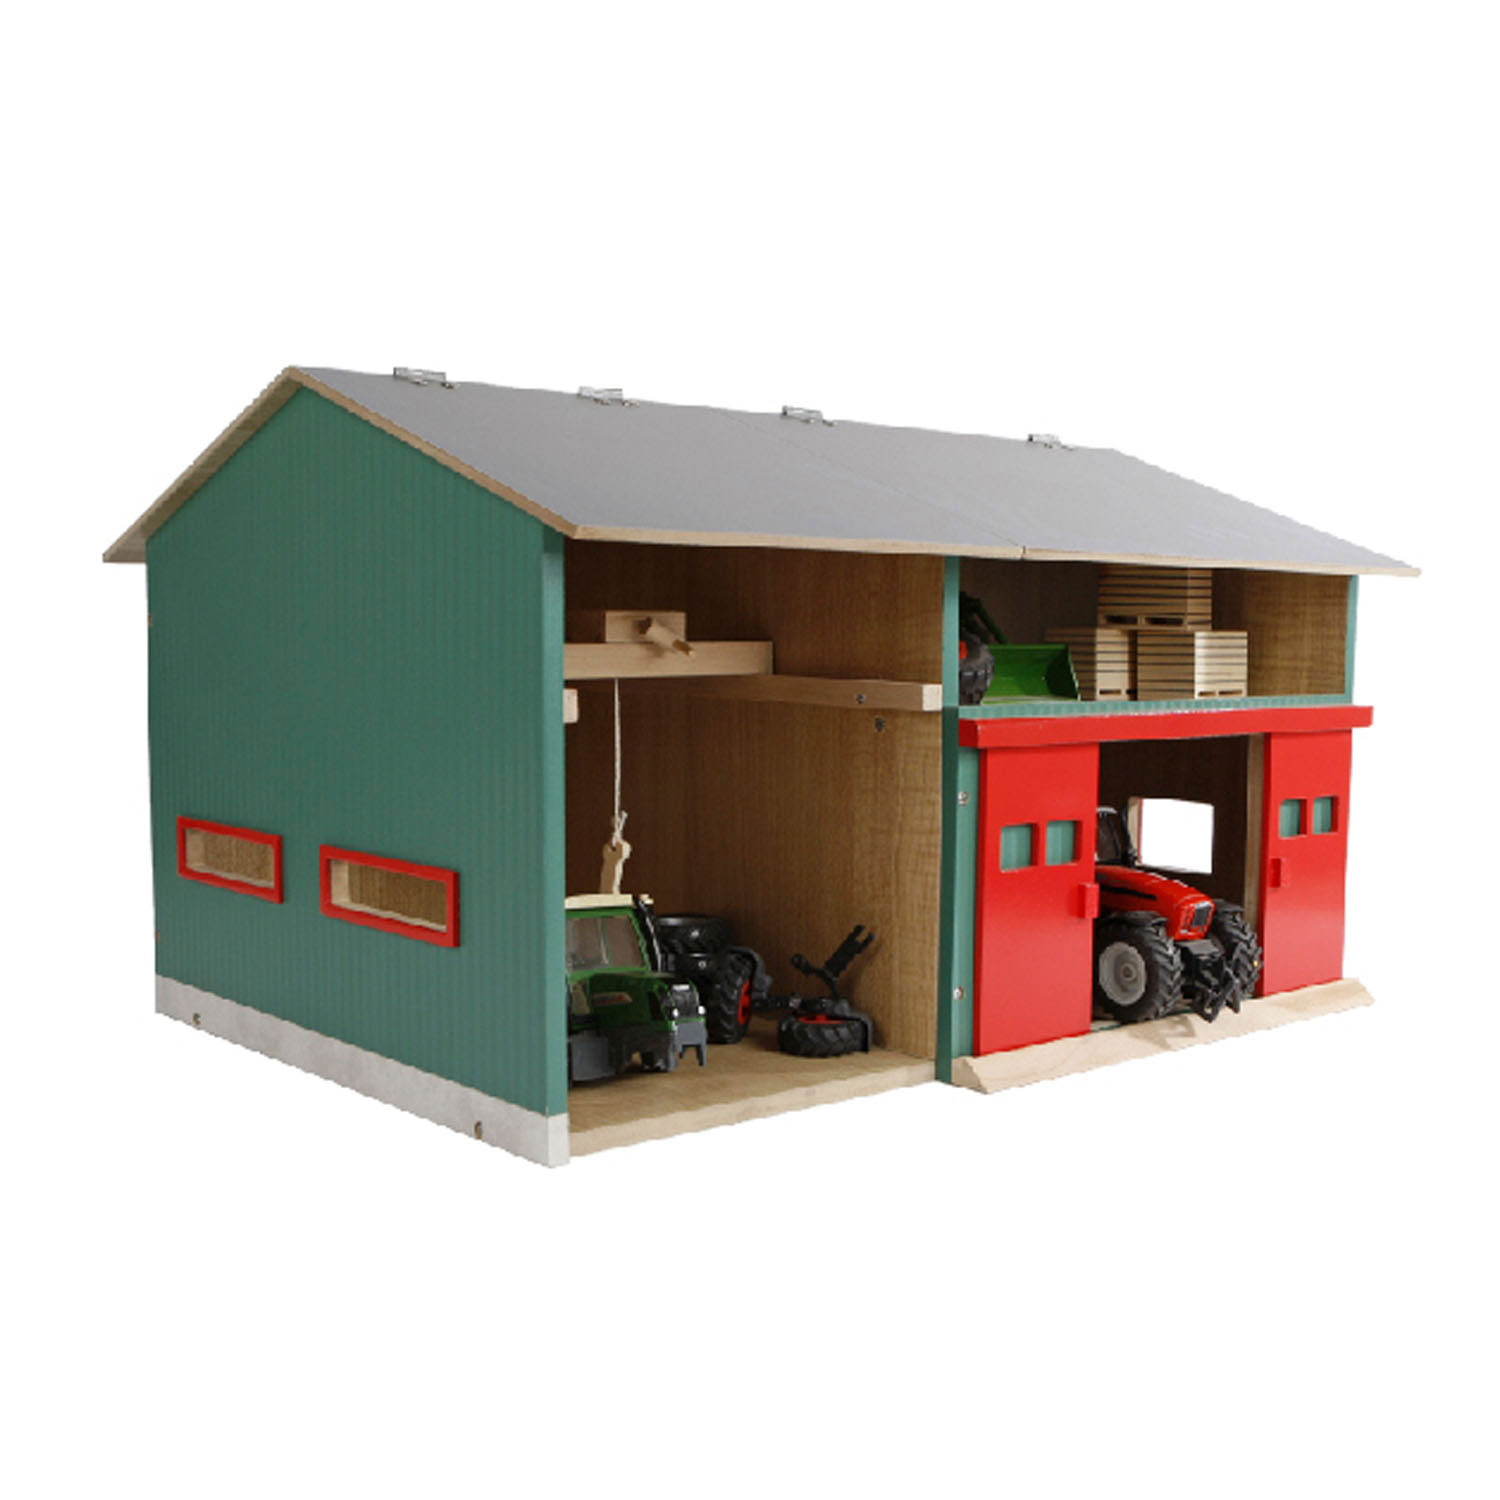 KidsGlobe Werkstatt mit Lagerraum 1:32 Dach aufklappbar Tore beweglich 41x54x32 